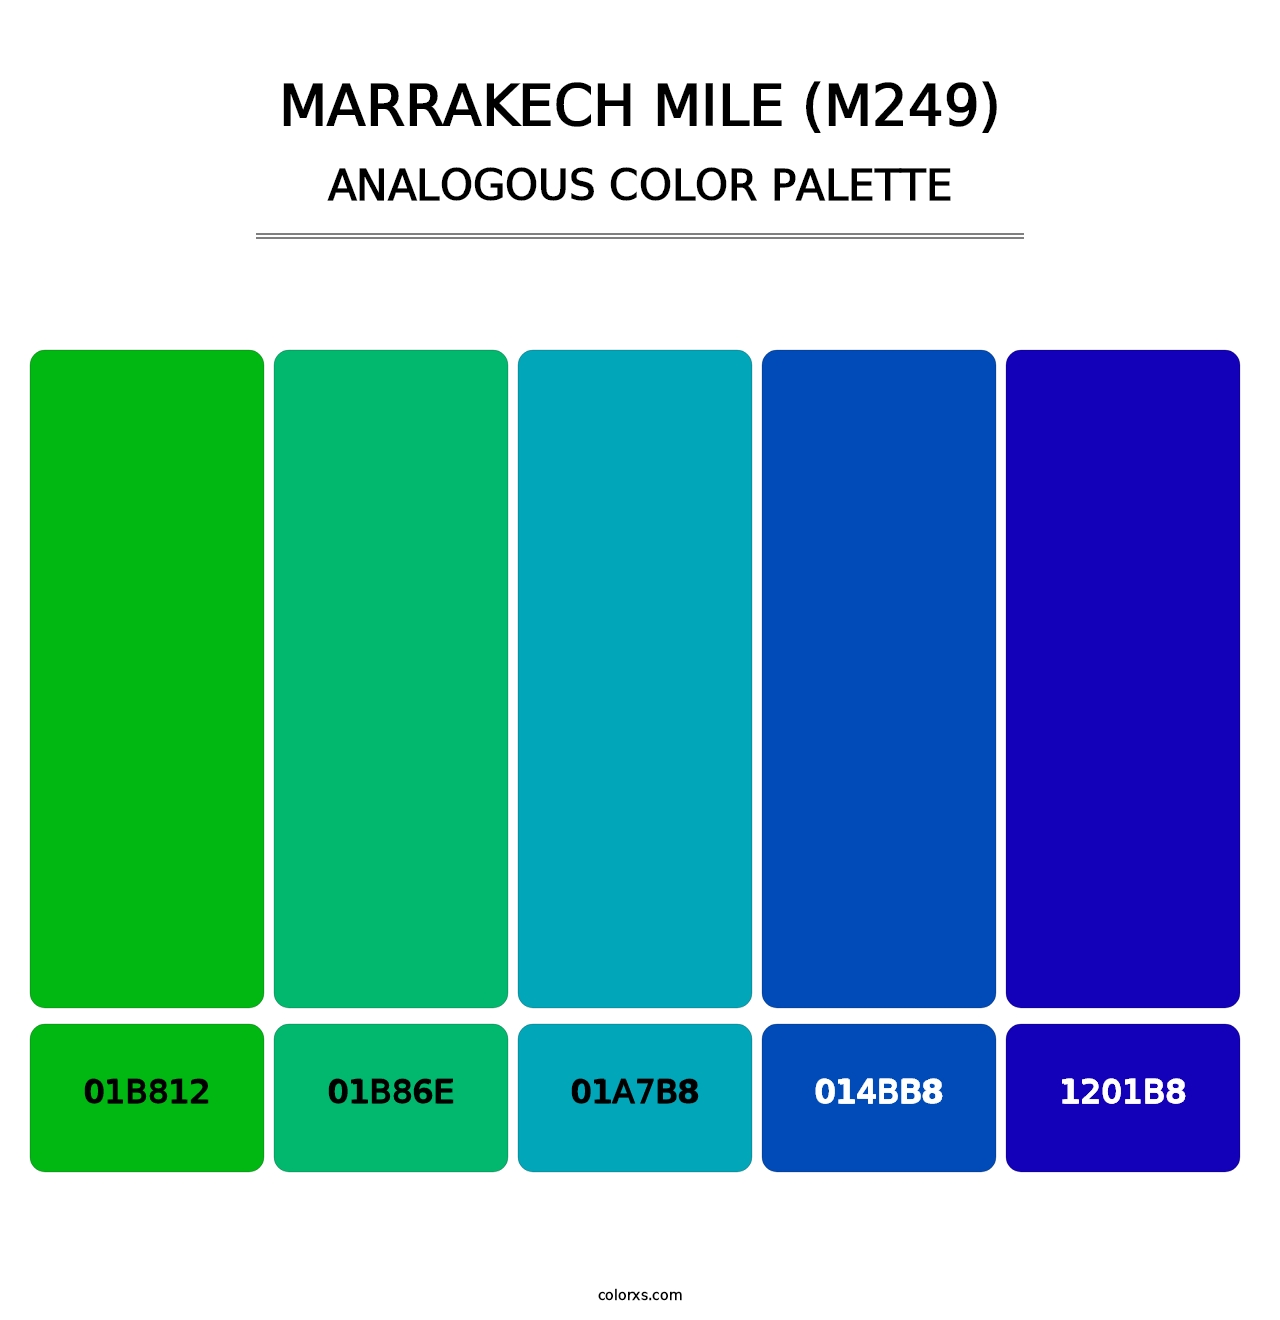 Marrakech Mile (M249) - Analogous Color Palette